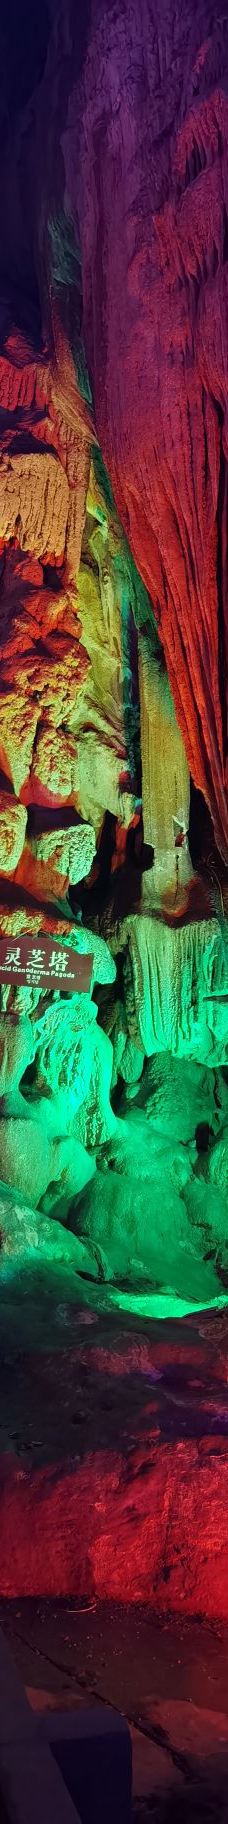 蓬莱仙洞-石台